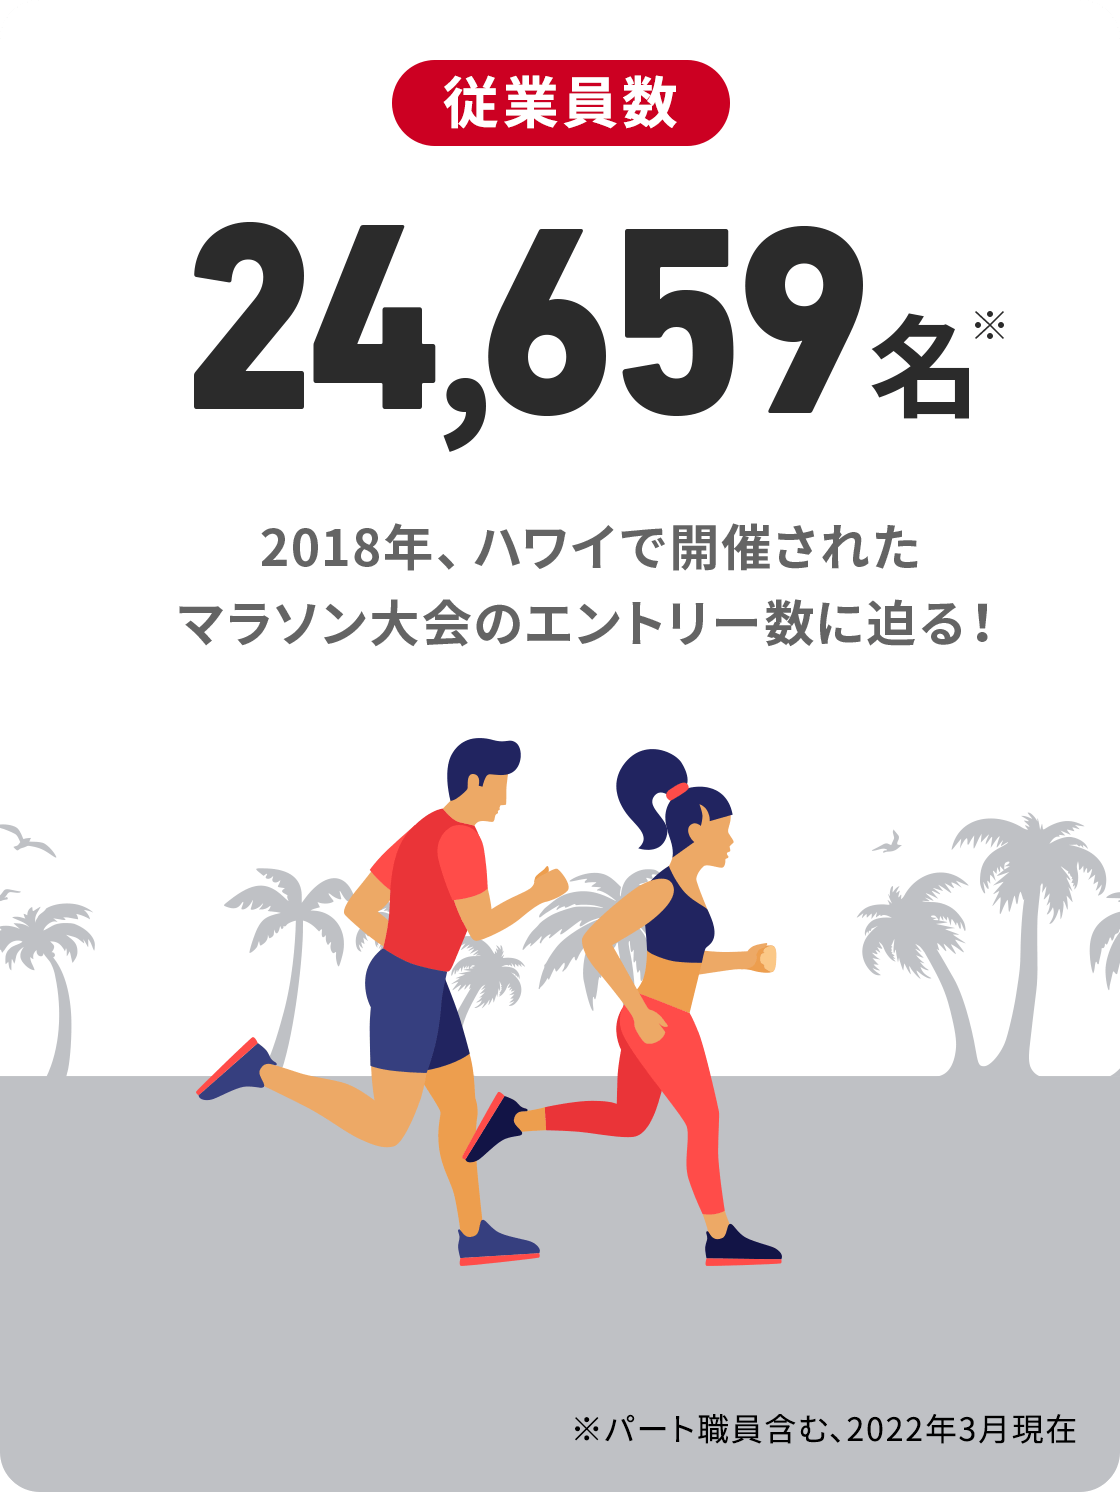 SOMPOケアの従業員数24,659名※　2019年、ハワイで開催されたマラソン大会のフルマラソンエントリー数を超える！※ＳＯＭＰＯケアグループ　2022年3月末時点